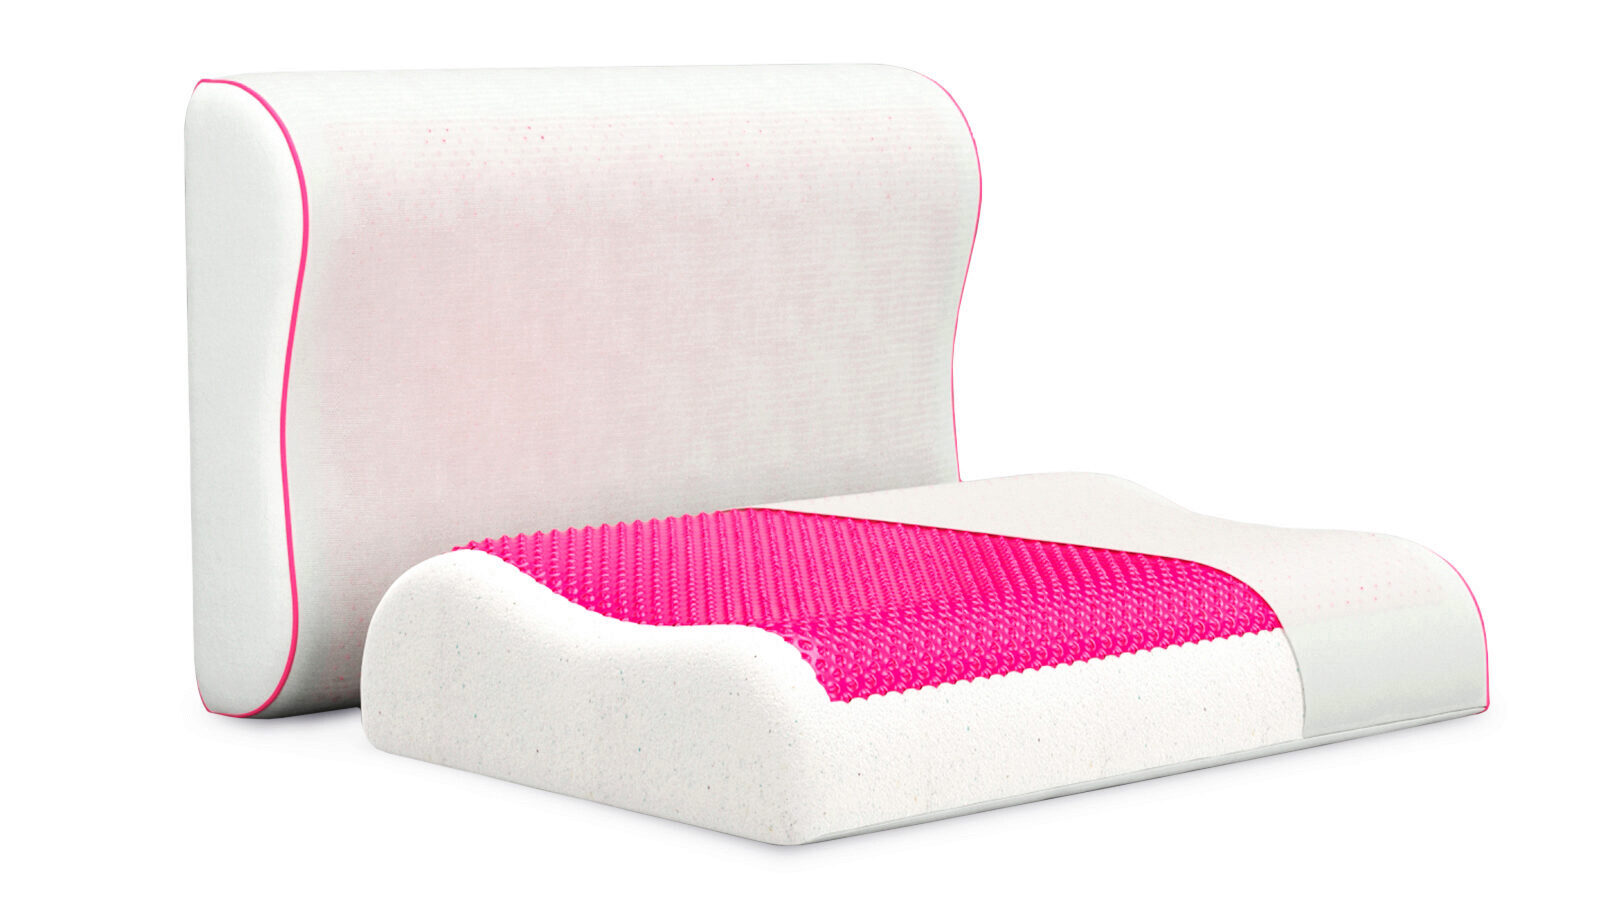 Анатомическая подушка Ecogel Contour Pink for art s sake yoyo pink mr3